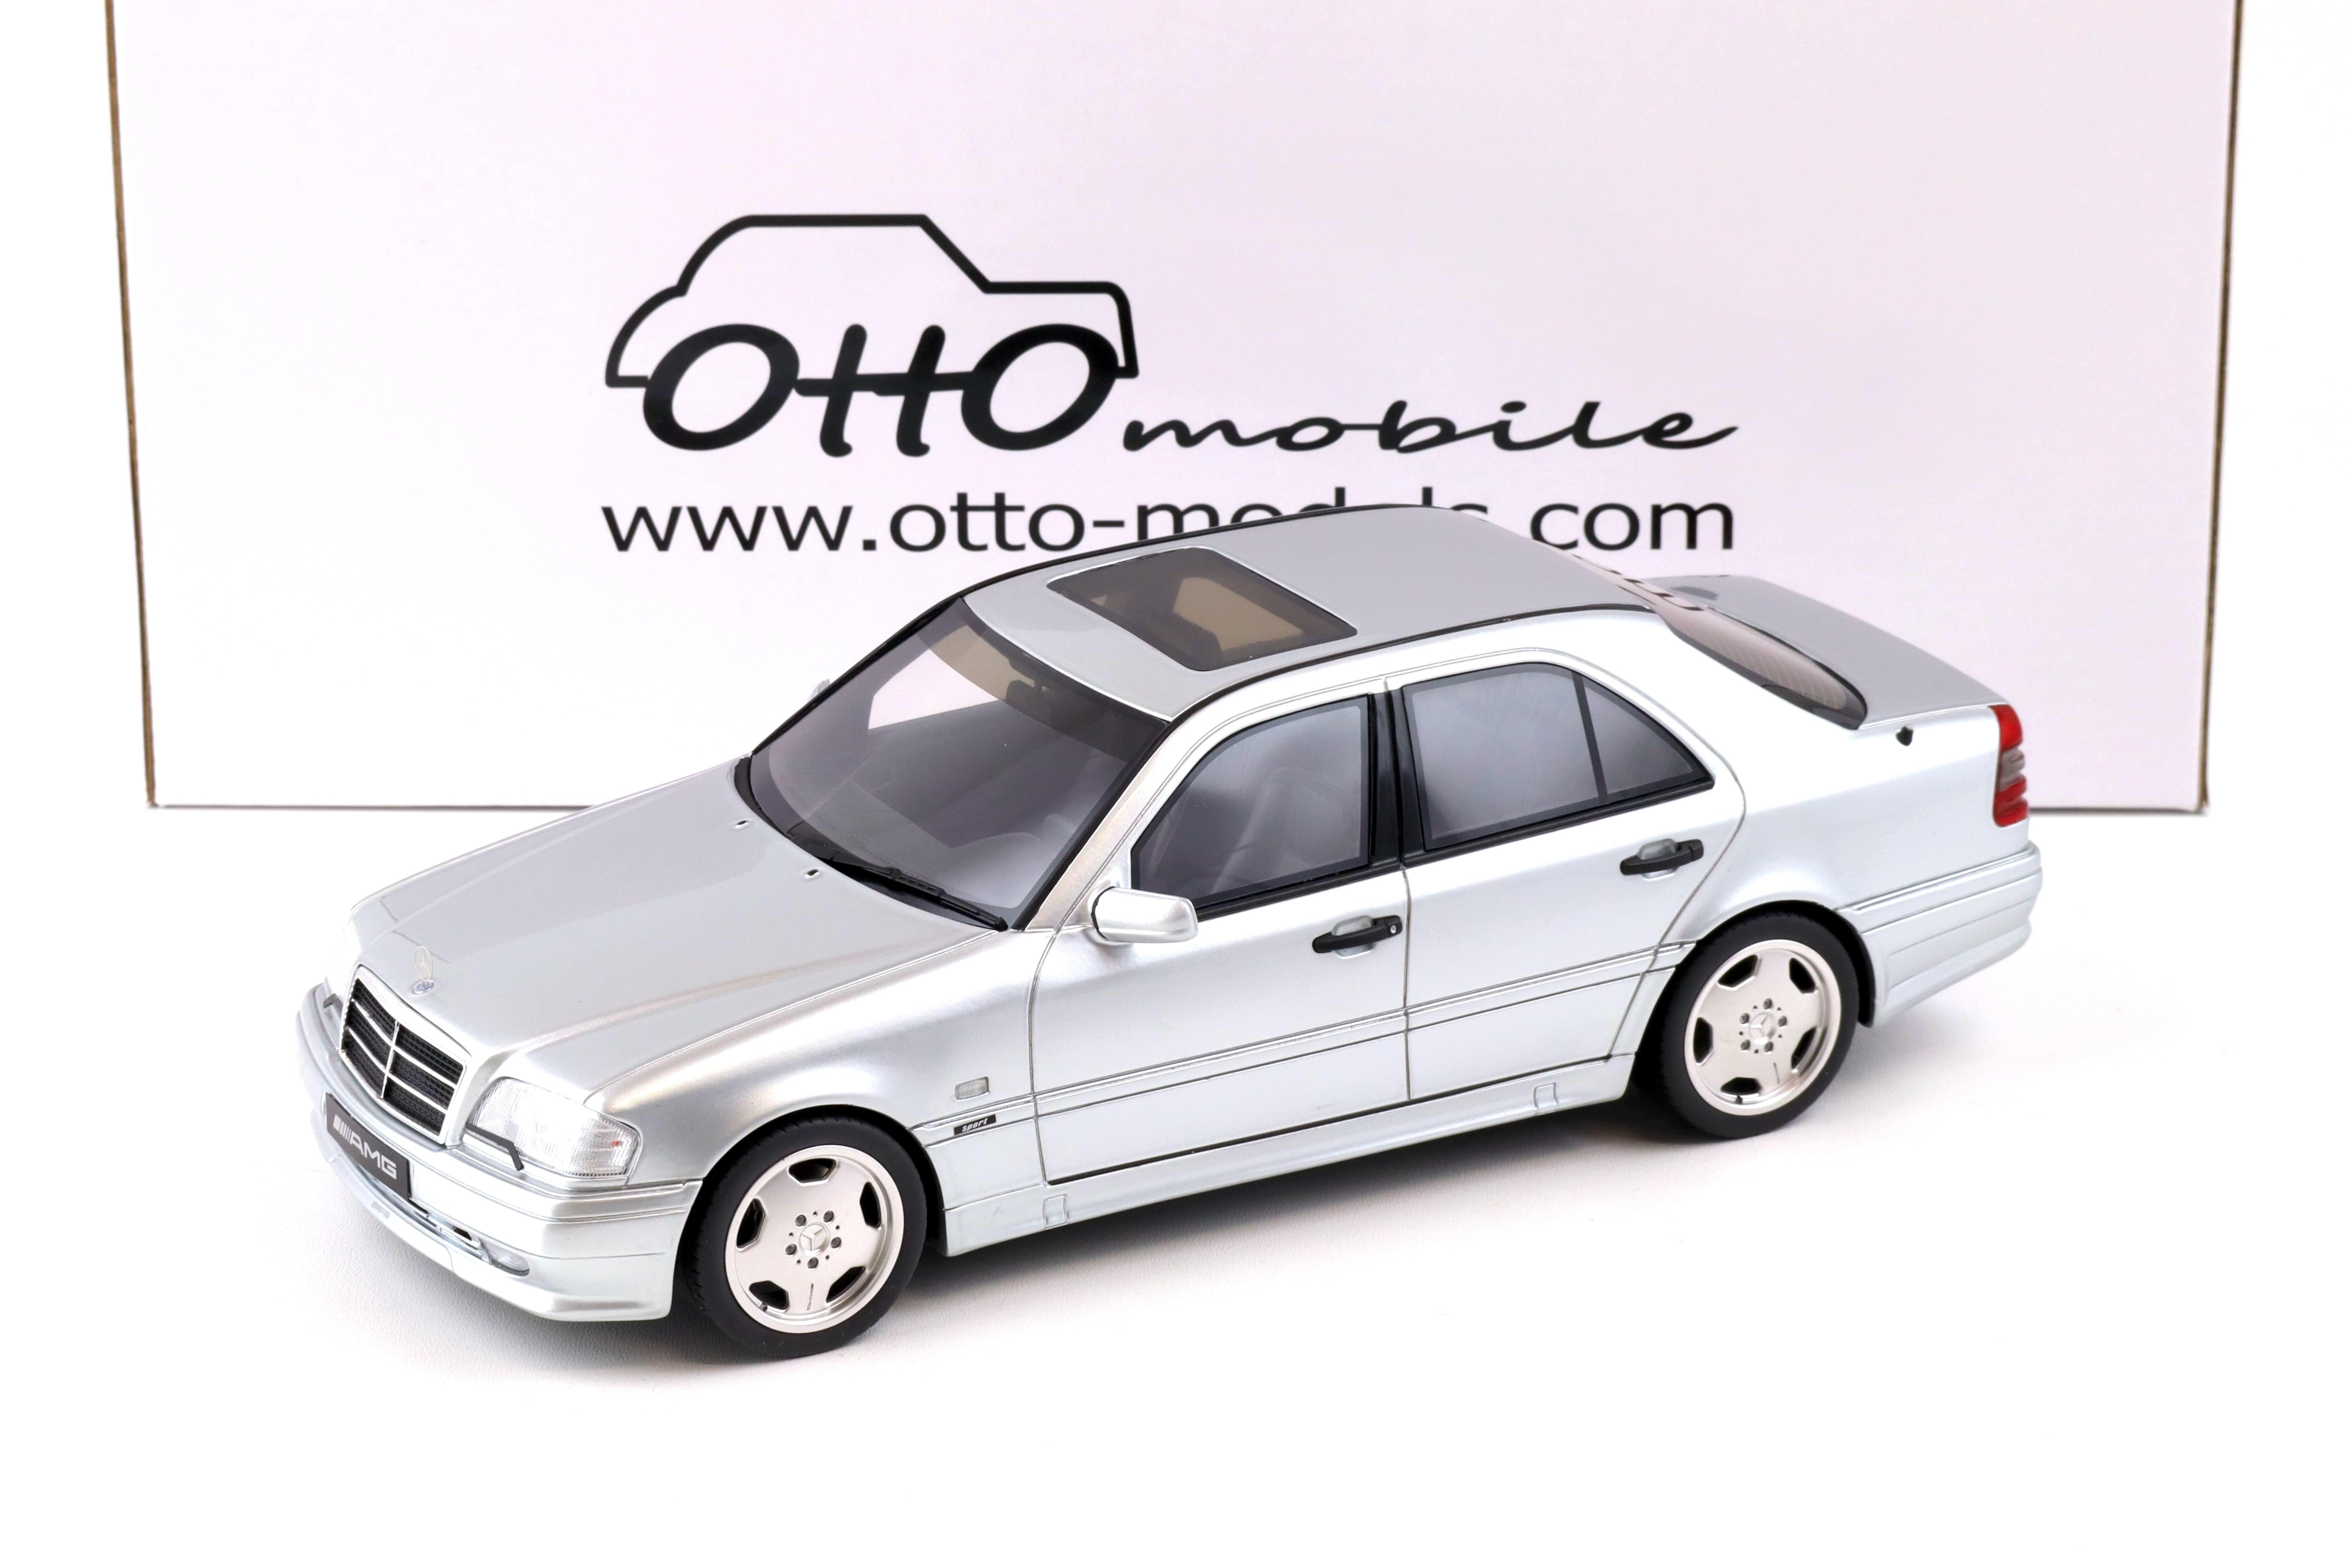 1:18 OTTO mobile OT443 Mercedes C36 AMG (W202) Limousine silver 1990